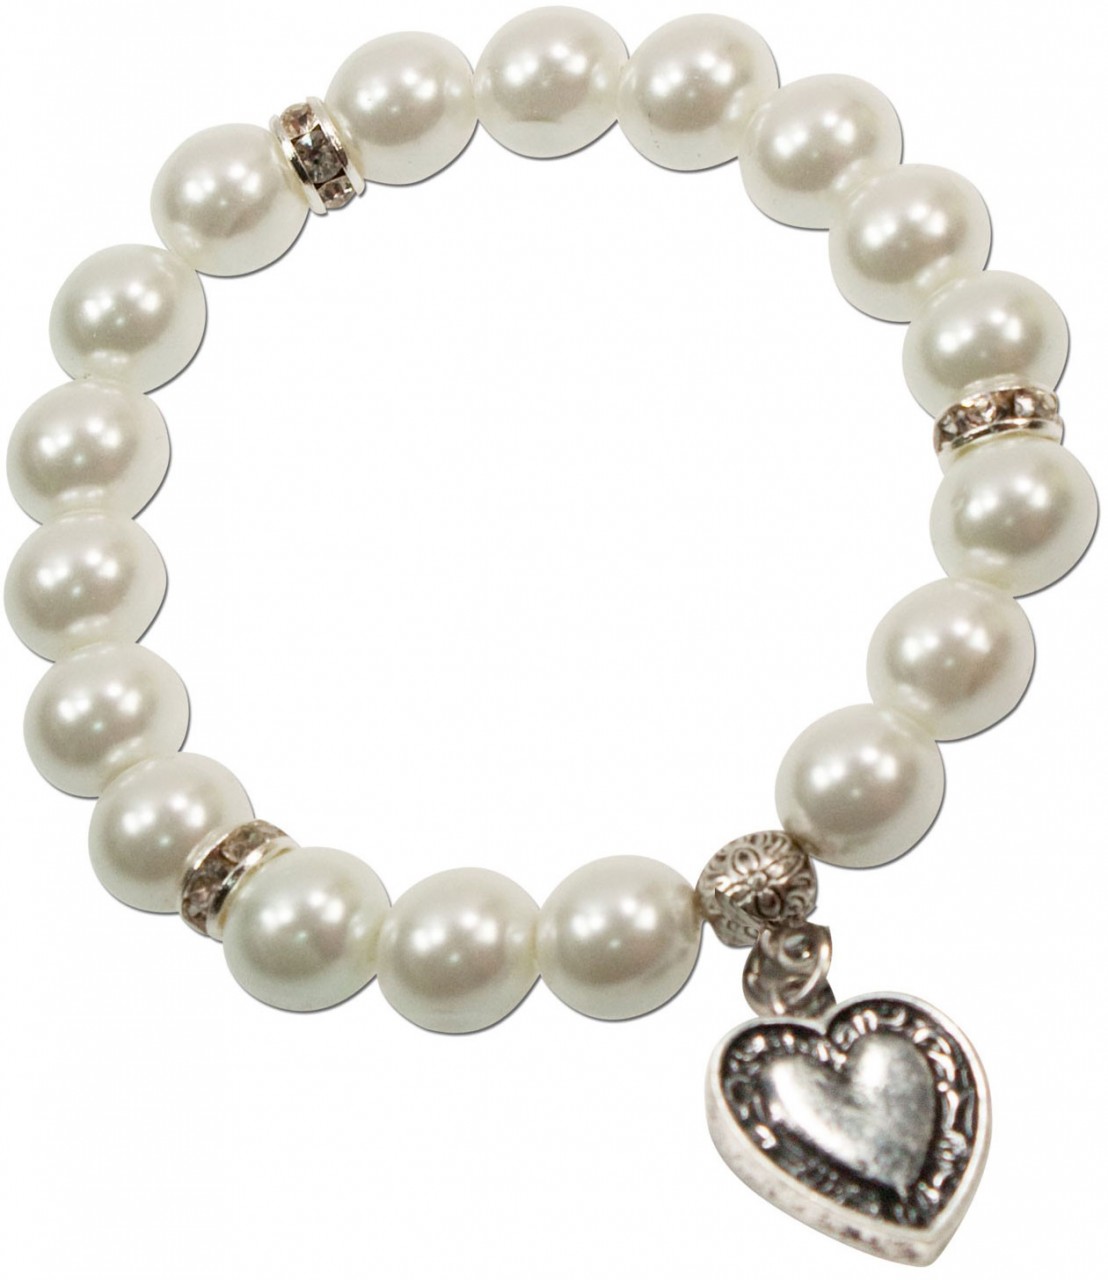 Bracelet de Trachten en perles Tina blanc crème